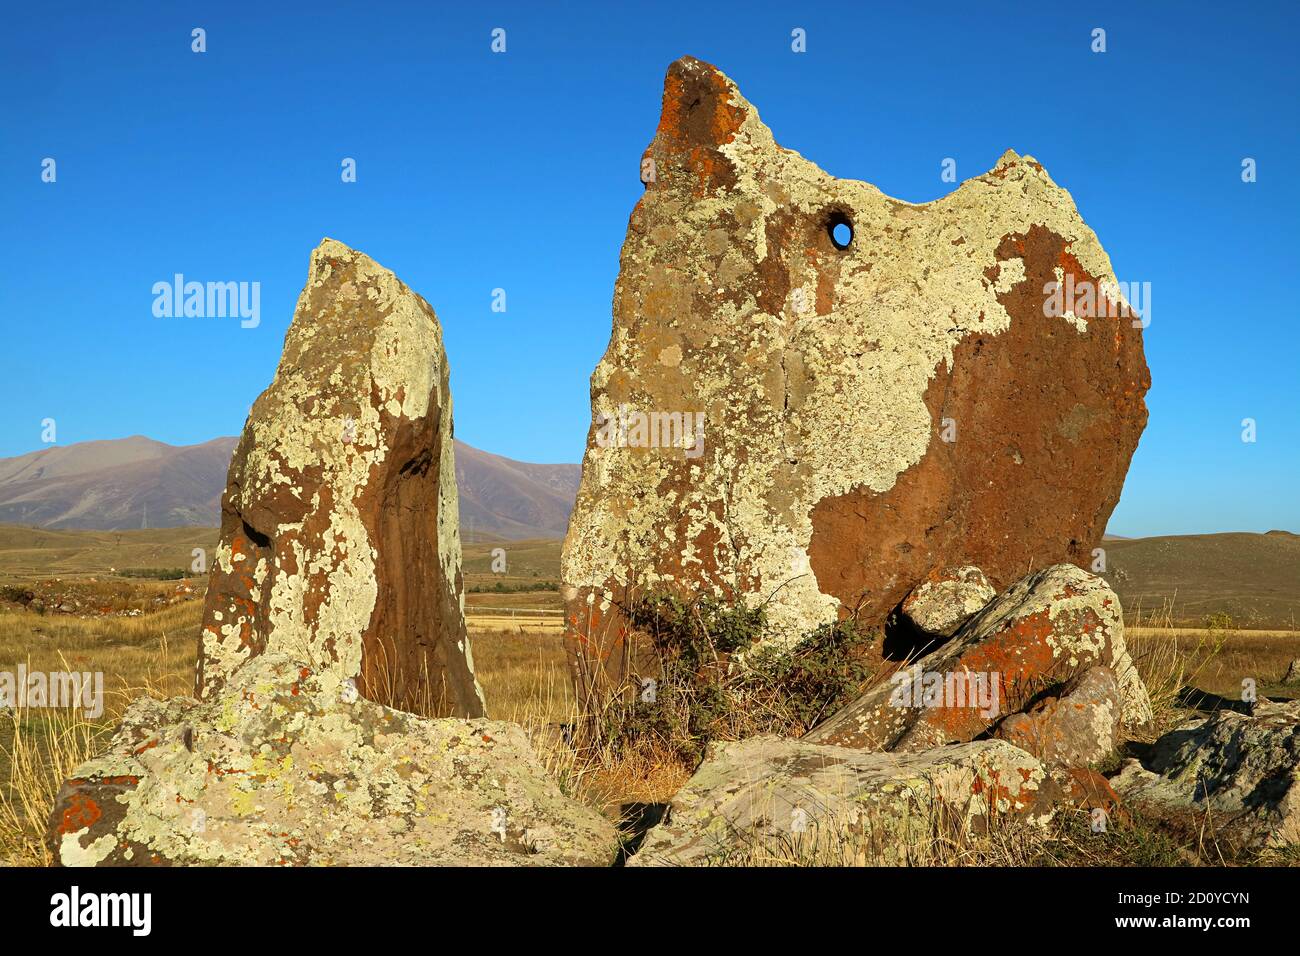 Carahunge, souvent appelé Stonehenge arménien, site archéologique préhistorique considéré comme l'un des plus anciens observatoire astronomique du monde Banque D'Images